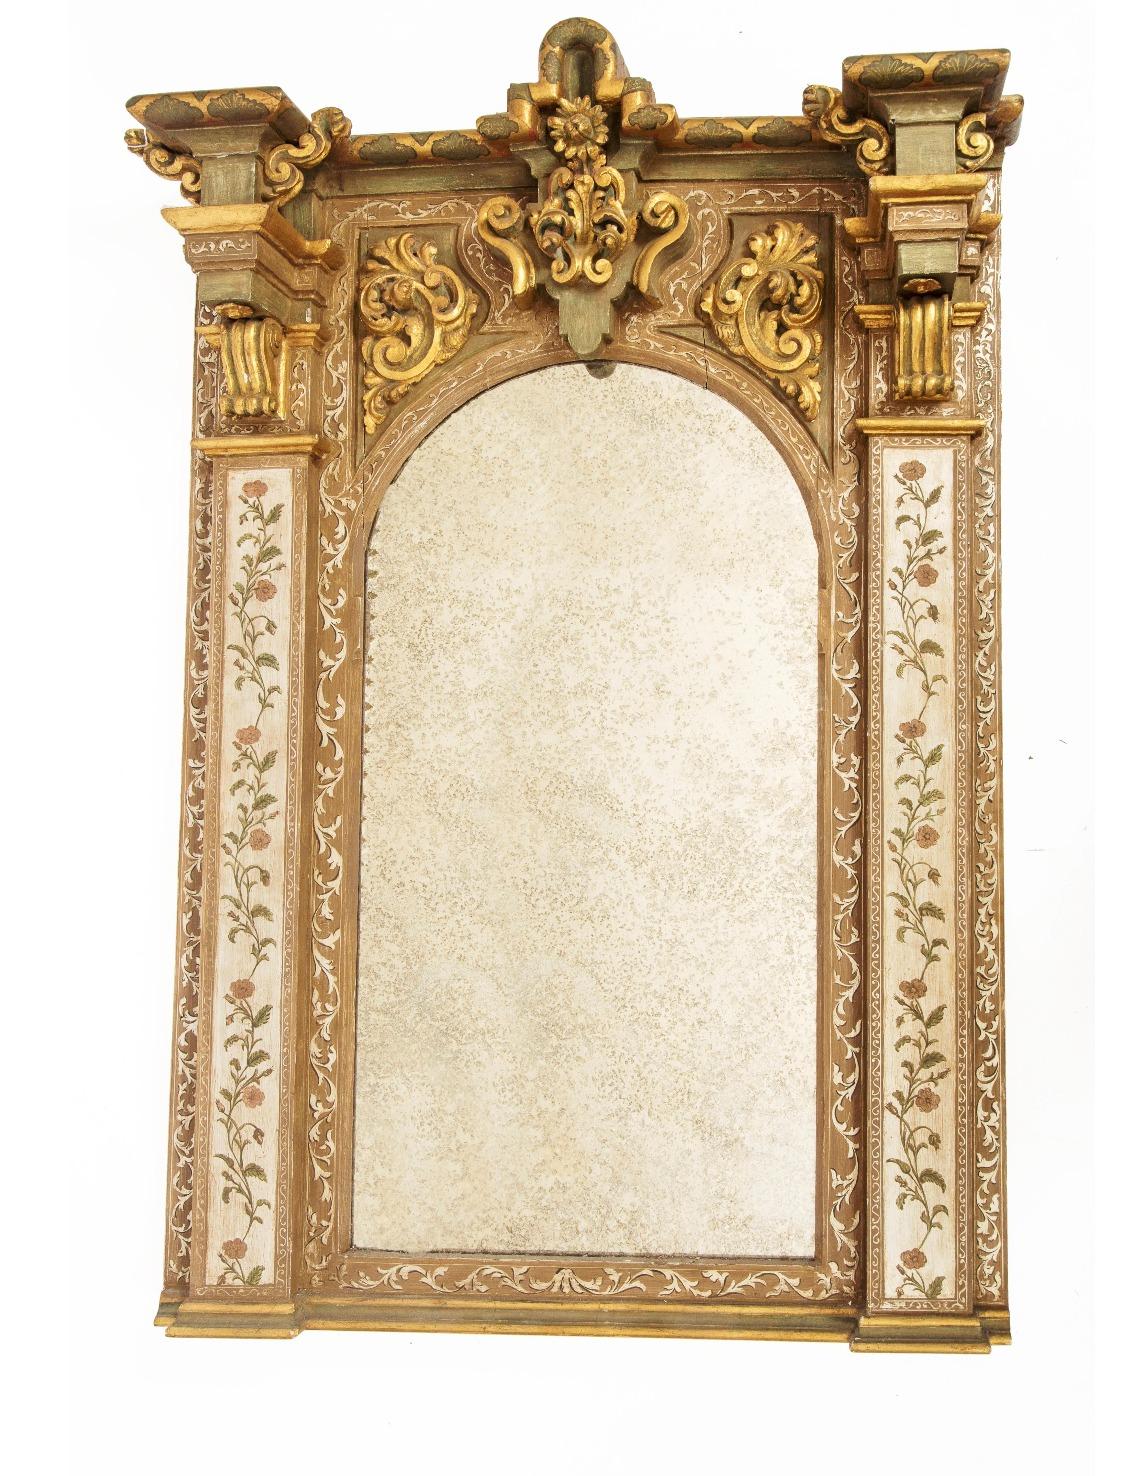 Miroir baroque français en bois sculpté 19ème siècle
Polychrome et peint à l'or. 
Corps rectangulaire, dessus miroir avec encolure ronde. 
Mesures : H. : 175 cm, L. : 105 cm, P. : 24 cm.
Très bon état.
  